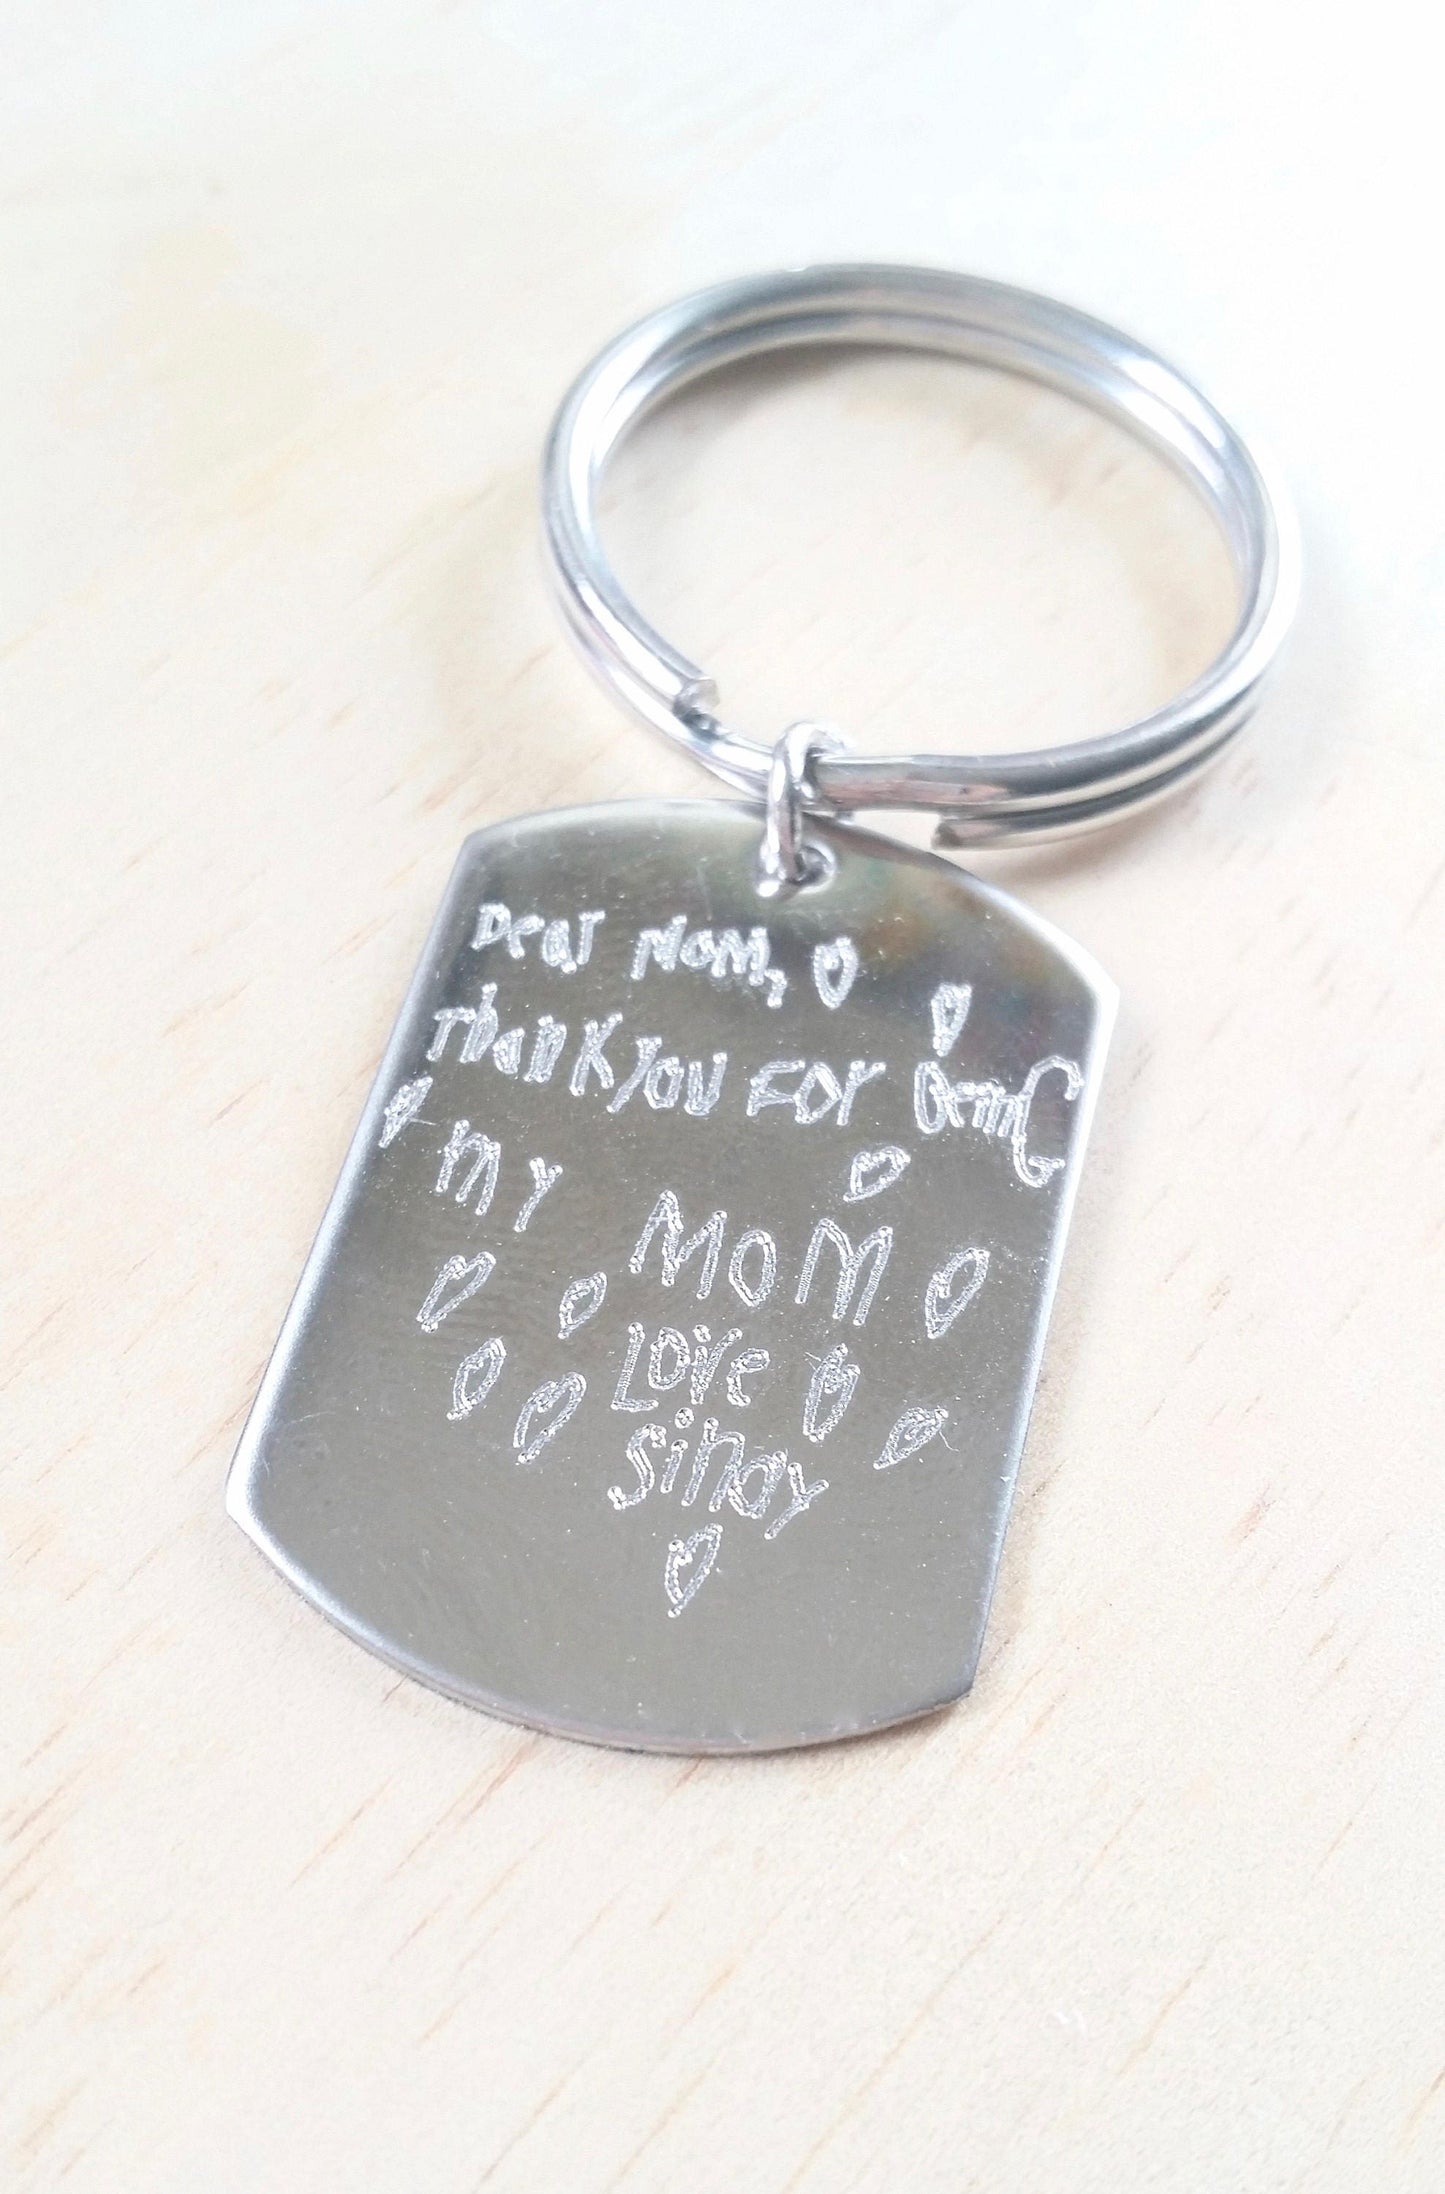 Dessin d'enfant gravé sur un porte-clés, cadeau pour parents/grands-parents